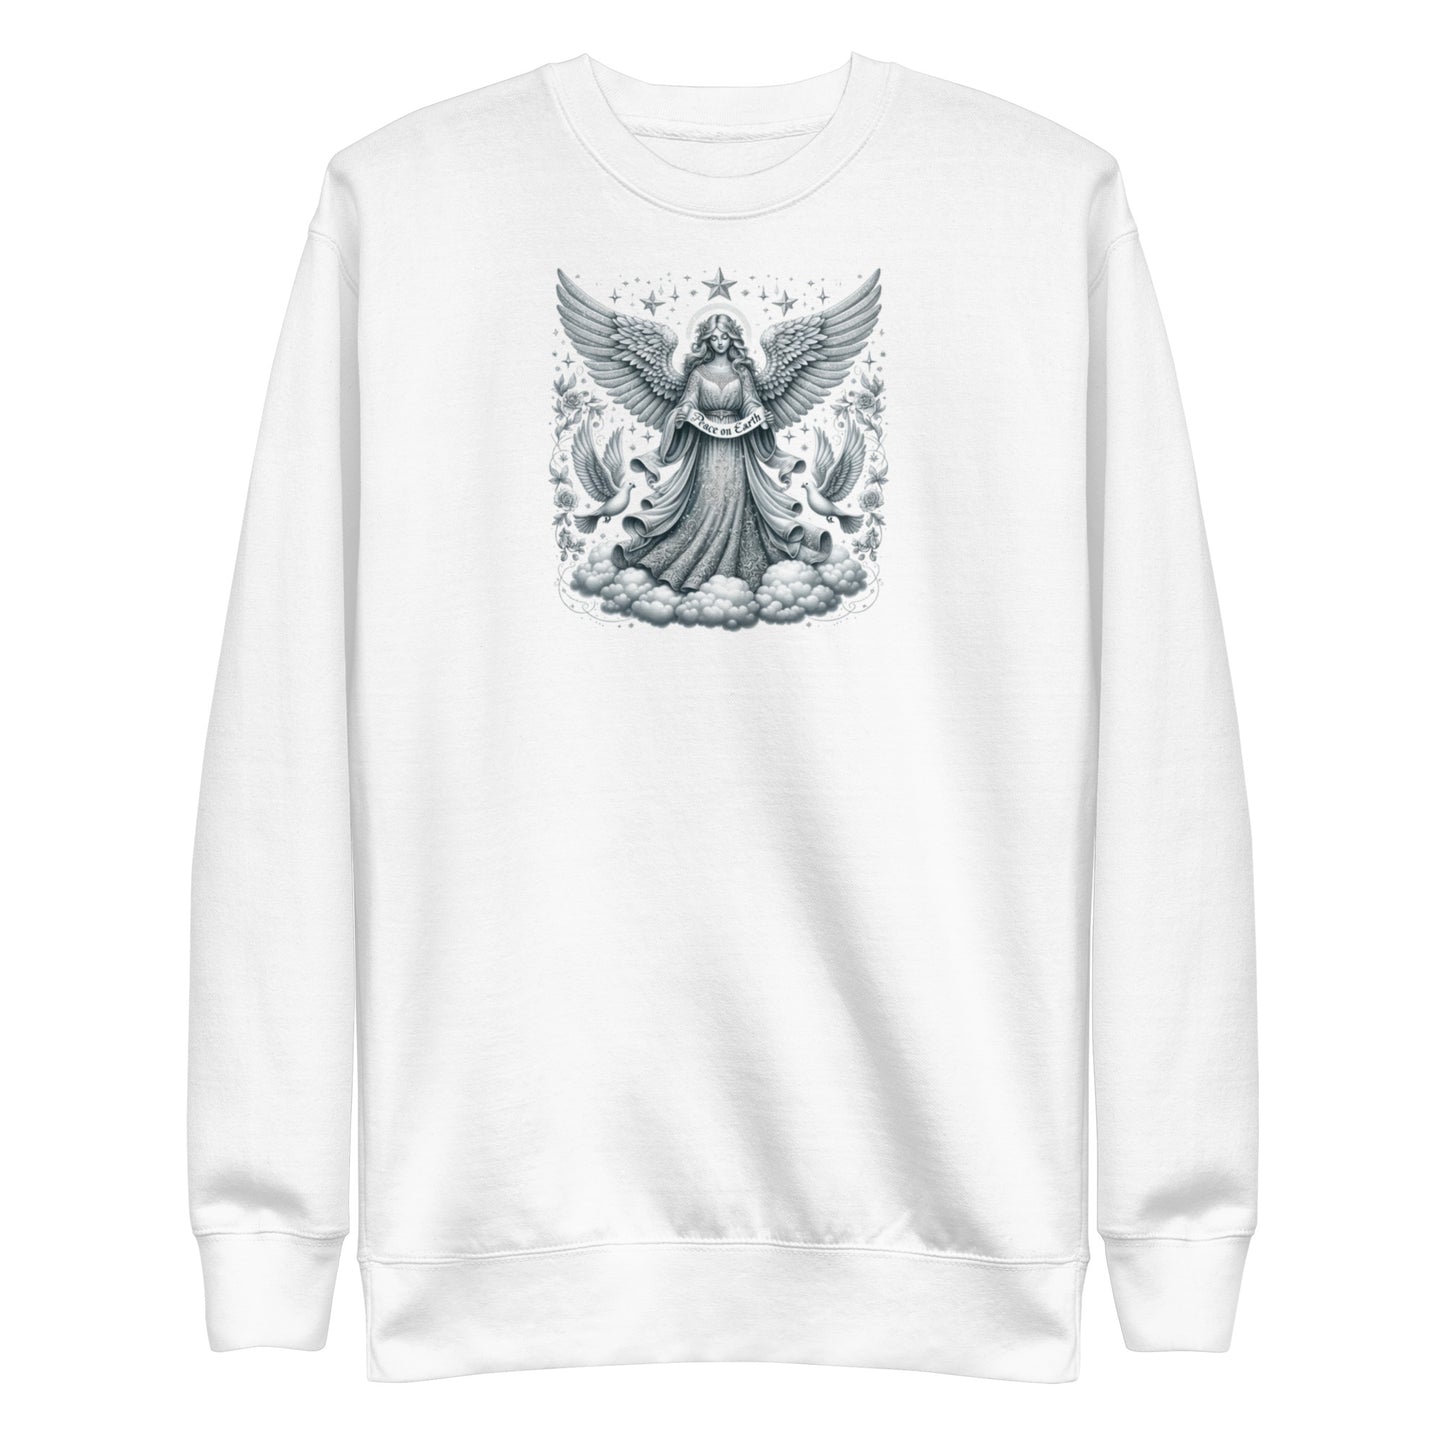 Unisex Premium Sweatshirt - Peace on Earth Angel